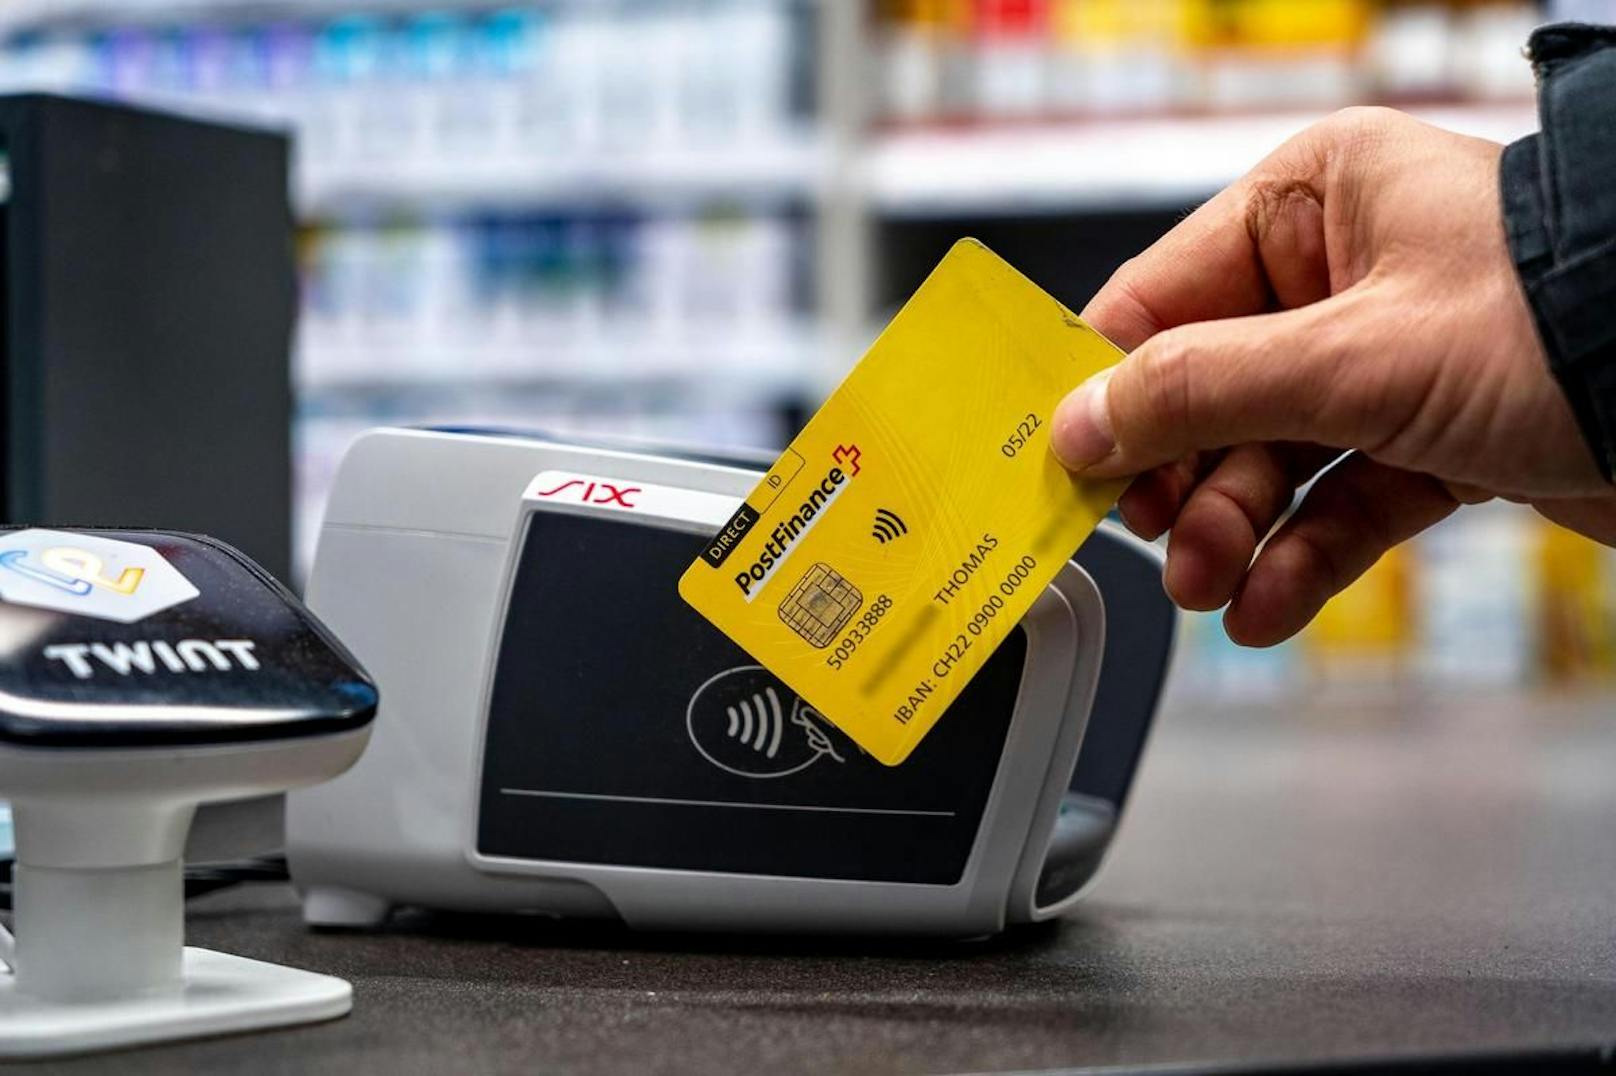 Auf dem Vertrauensindex liegt Twint nun auf der Höhe von Debitkarten wie der Postcard.